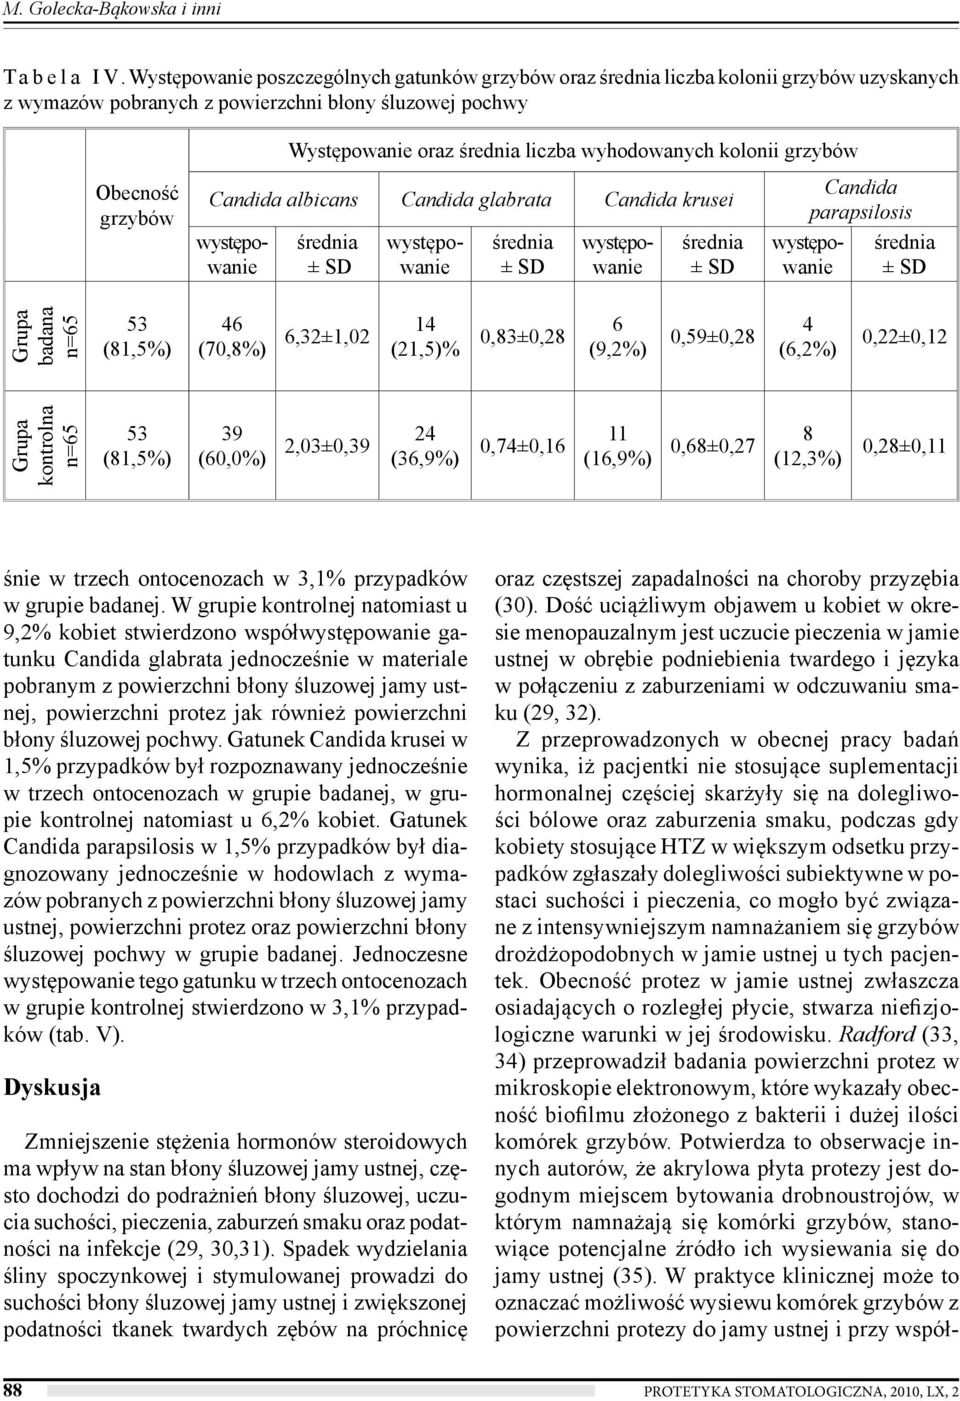 Obecność grzybów albicans glabrata krusei parapsilosis oraz częstszej zapadalności na choroby przyzębia (30).